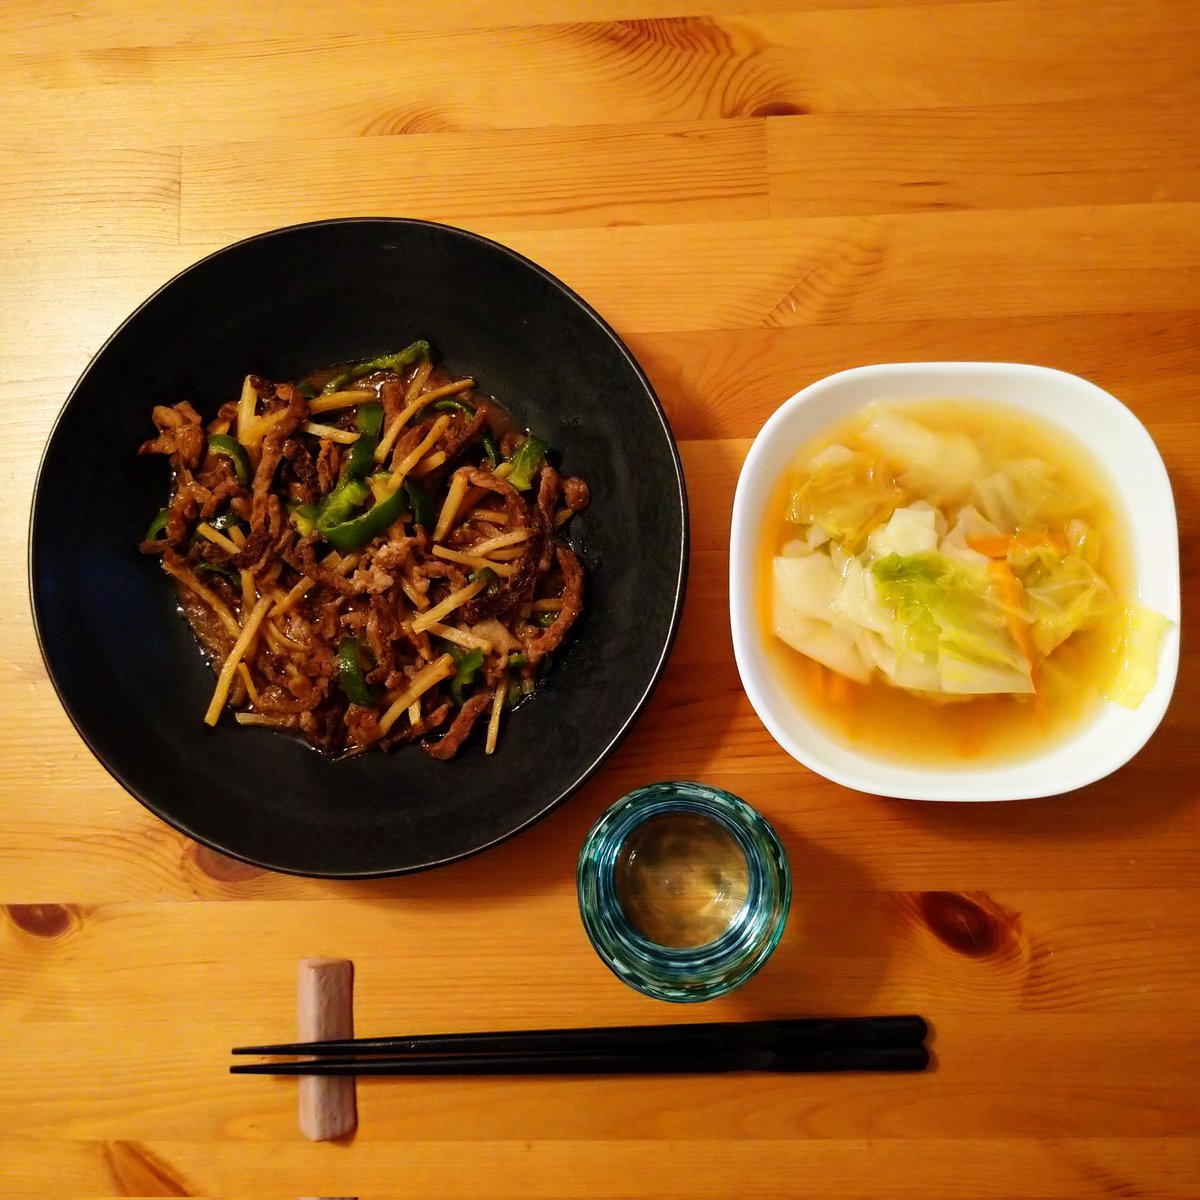 今日の夕飯💕安定の青椒肉絲😁汁椀は昨日に続いてワンタンスープで野菜たっぷり😉いただきます〜🤣呑まれる方はかんぱーい🍻